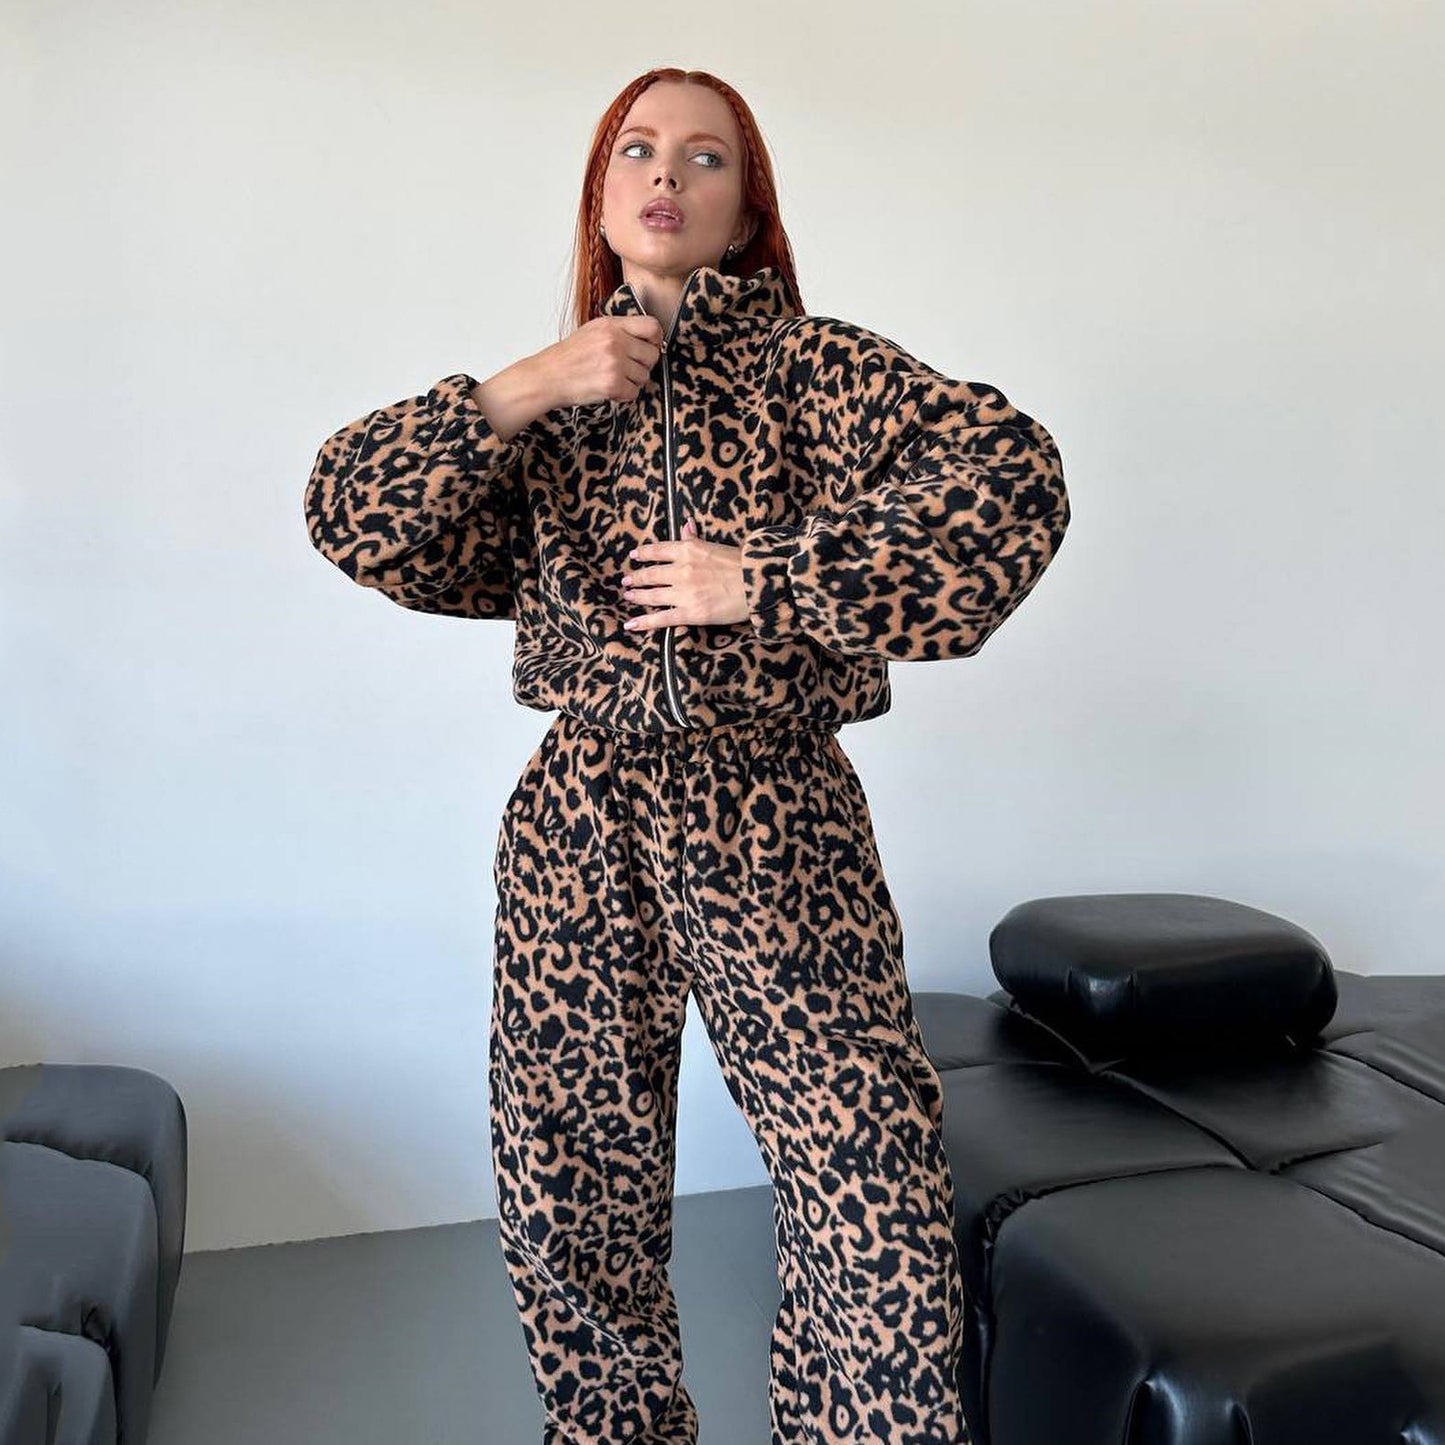 Damenmode-Pulloveranzug mit lockerem Leopardenmuster und Reißverschluss